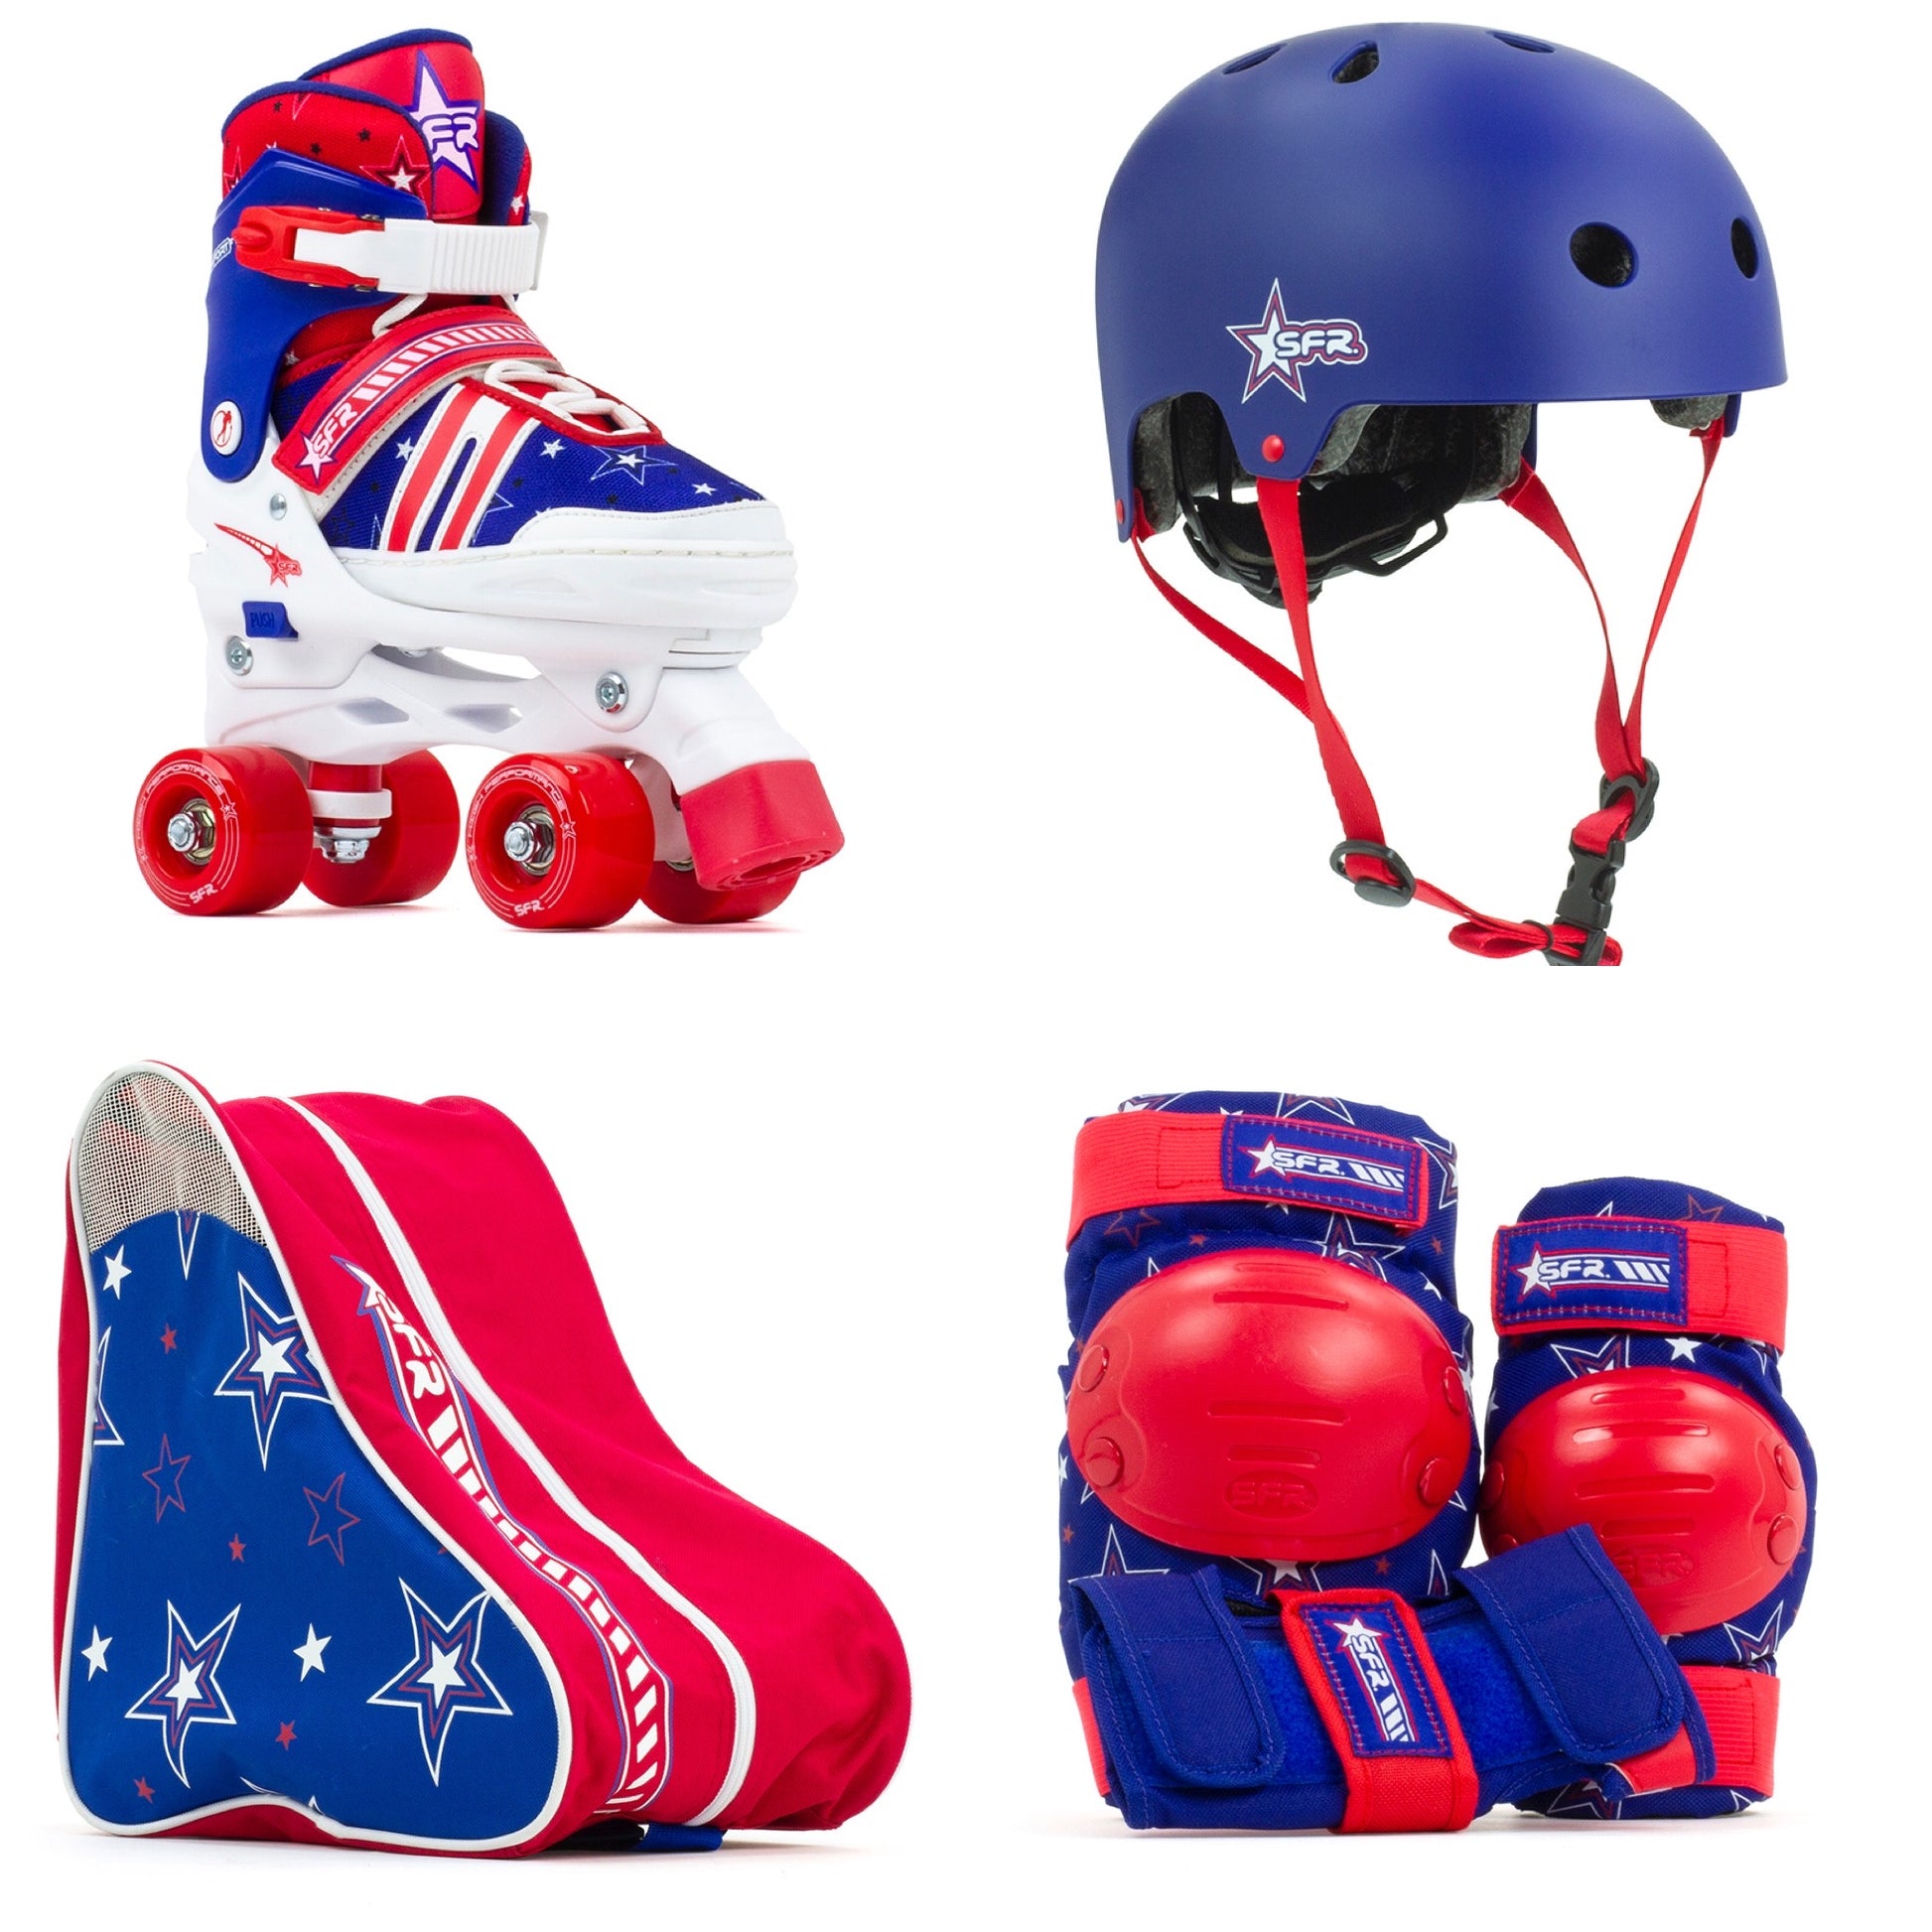 SFR Spectra Roller Skates Beginners Package Red & Blue, Pads, Helmet & Bag - Momma Trucker Skates